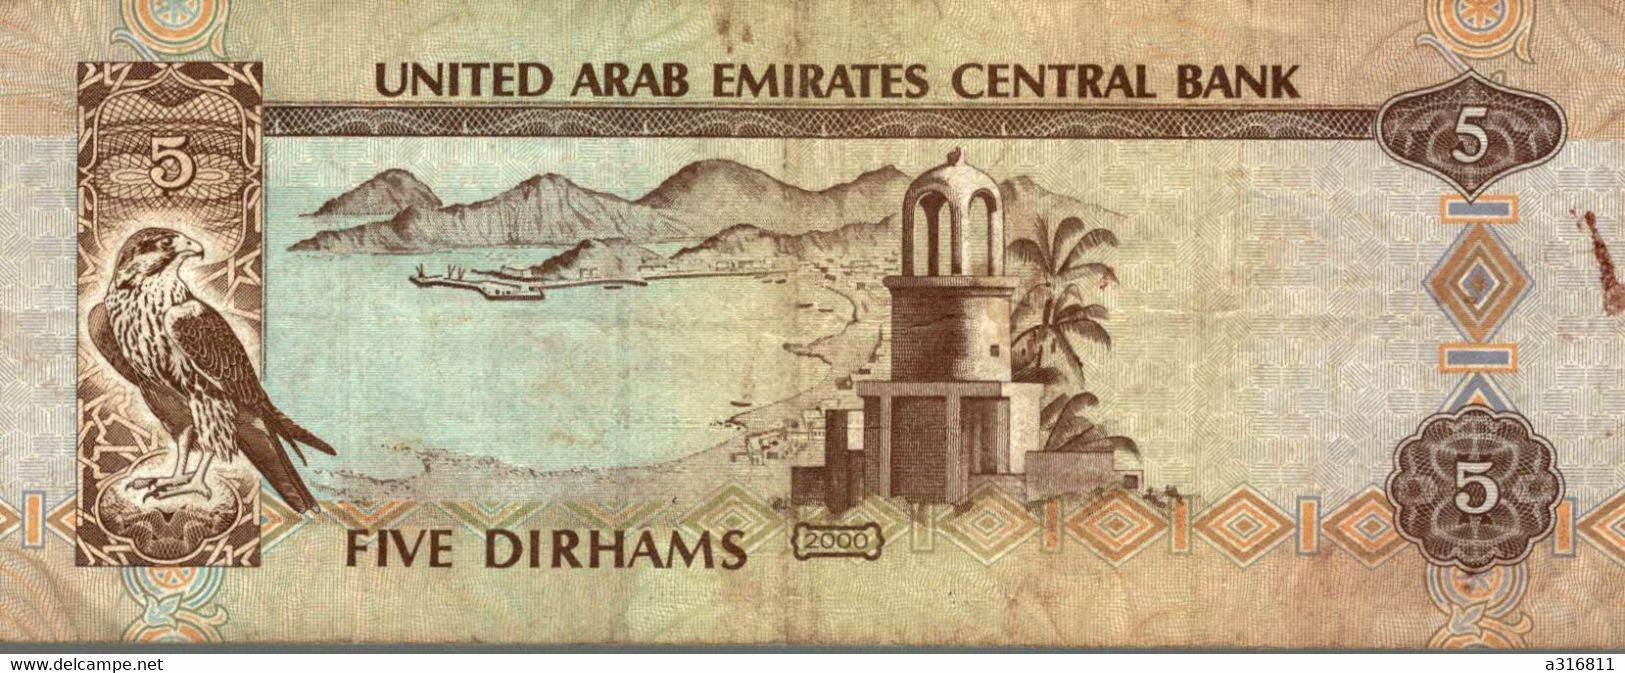 Five Dirhams 2000 - Ver. Arab. Emirate